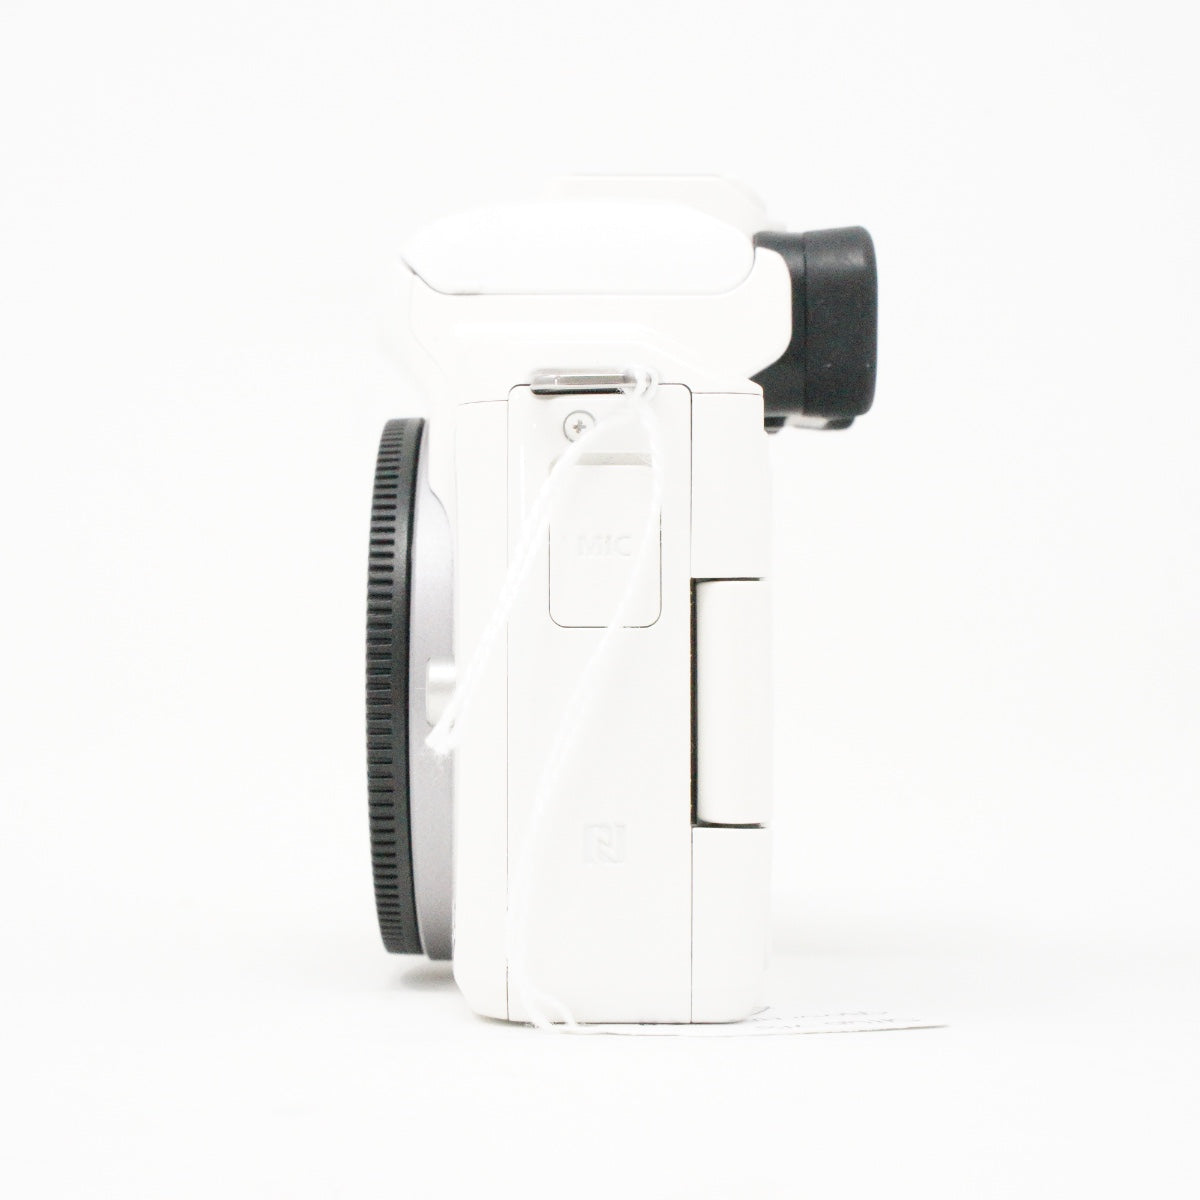 Used canon EOS M50 digital camera body in White